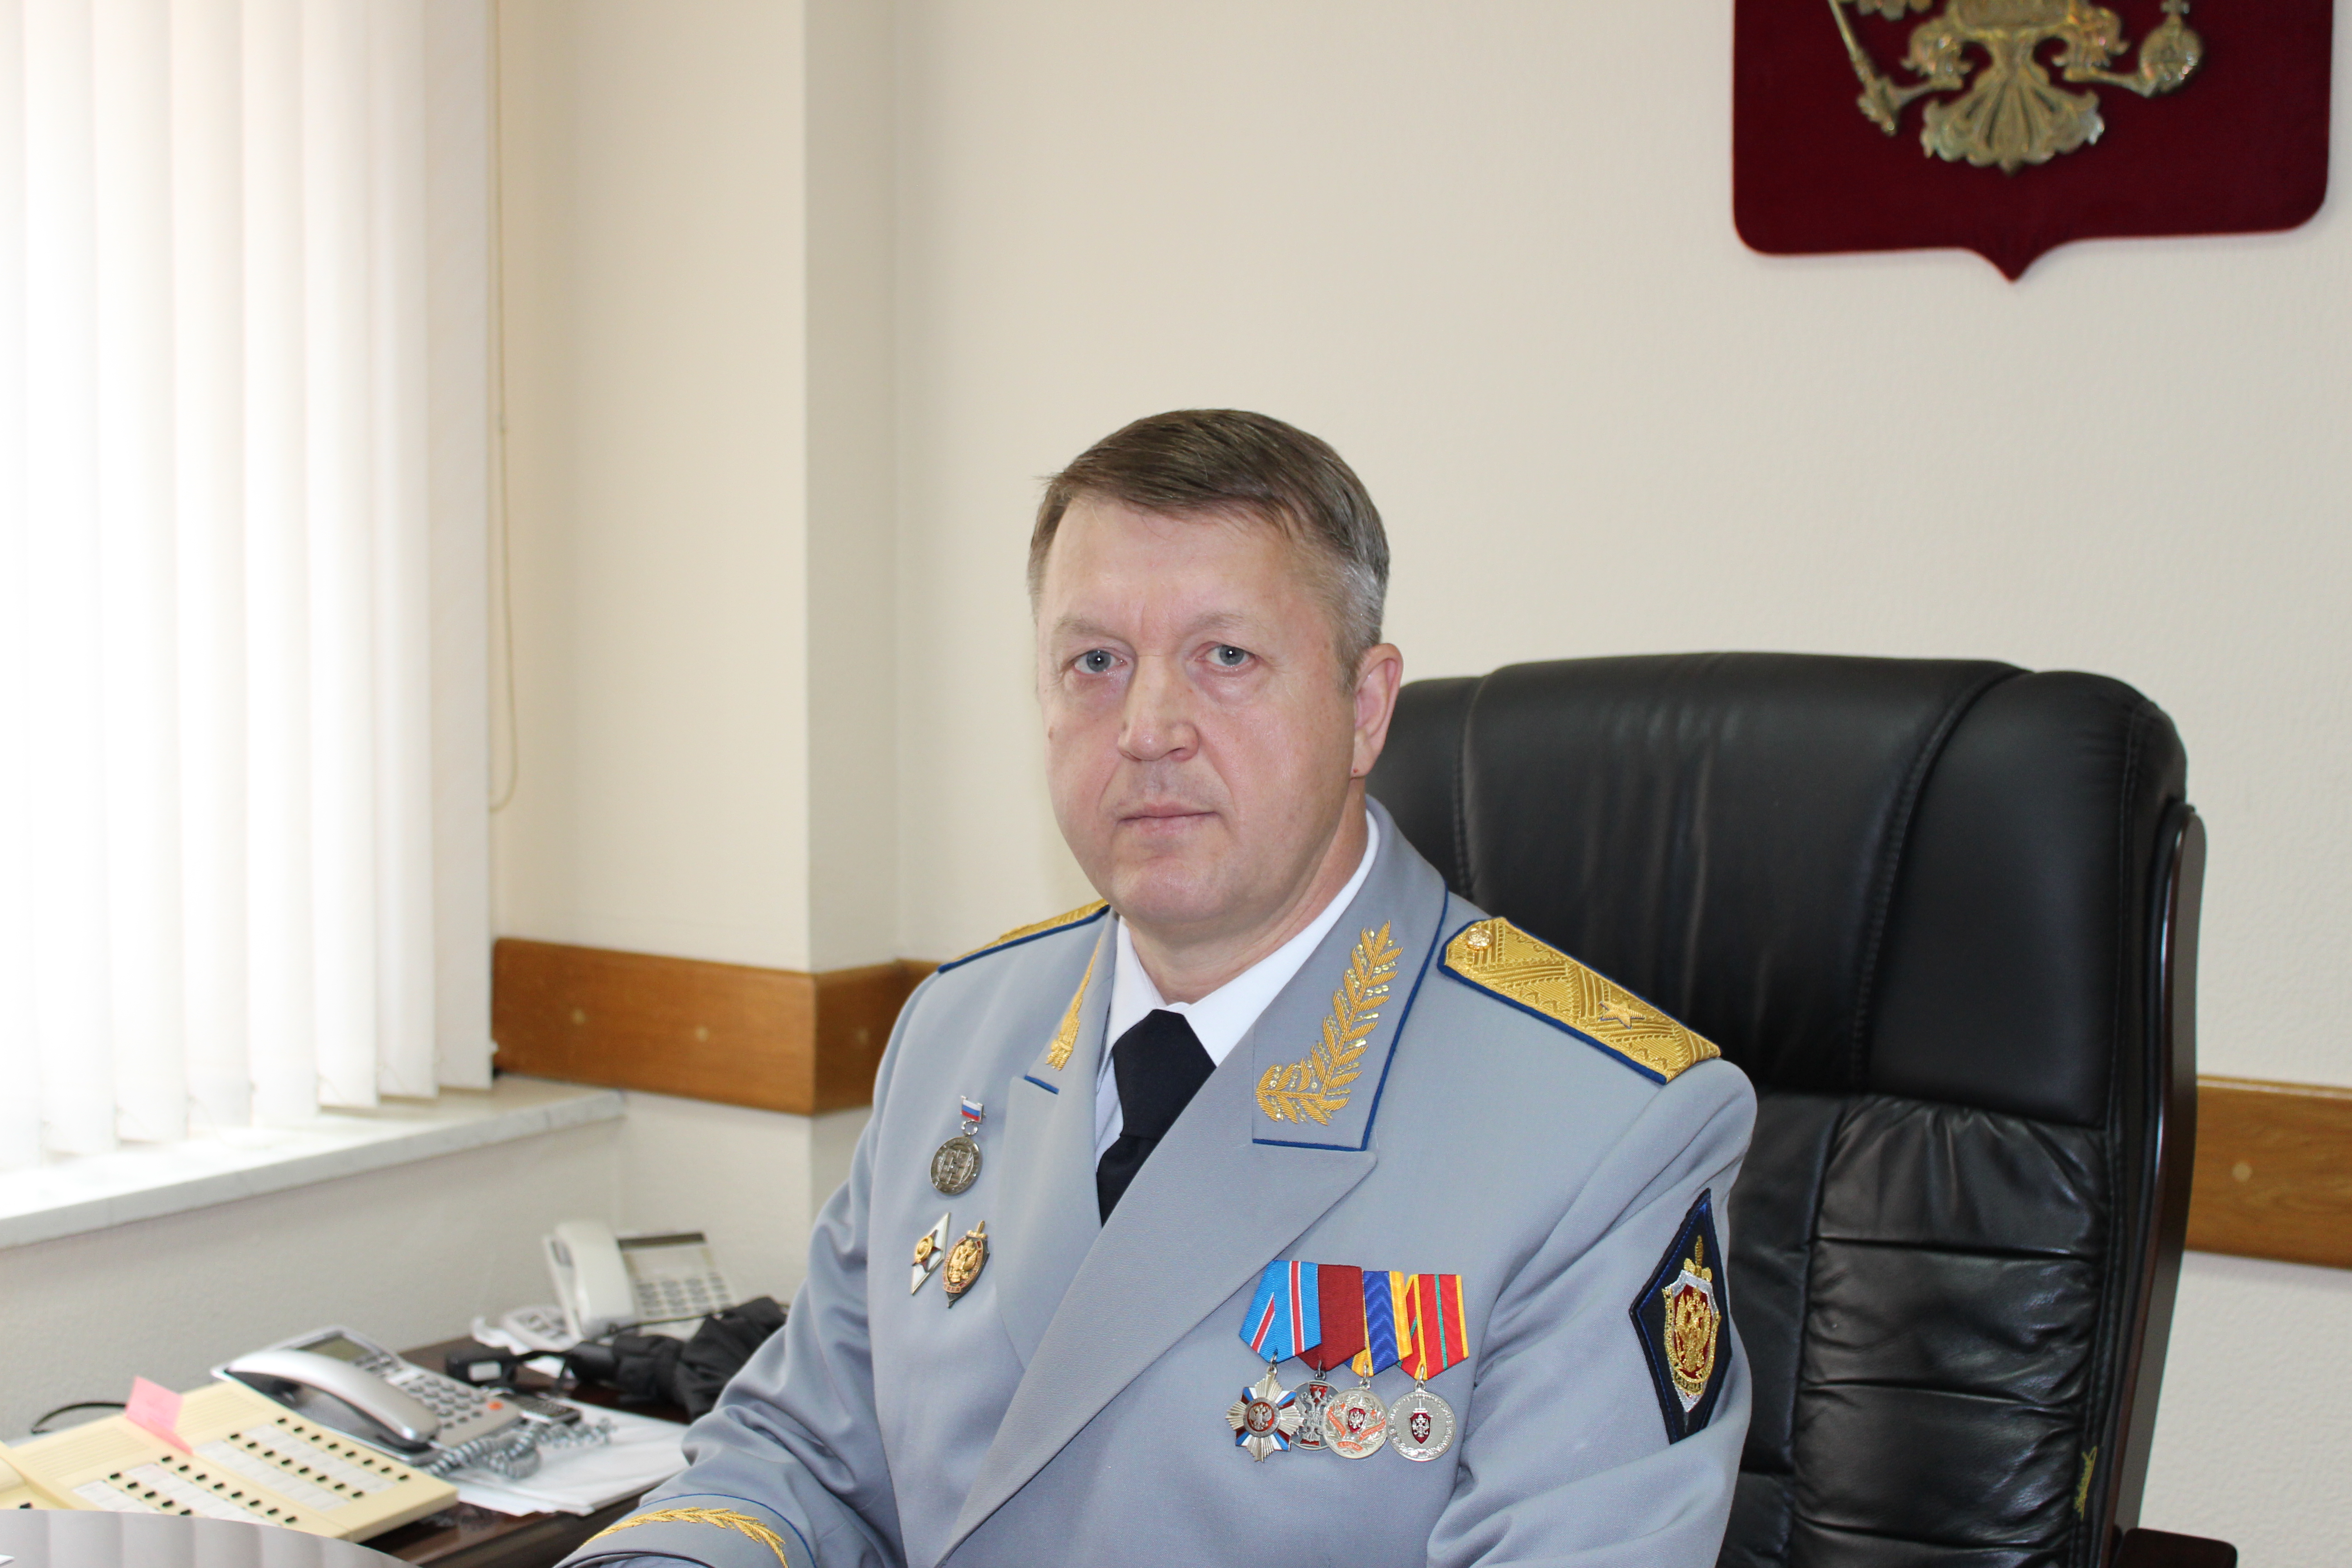 Захарихин Сергей Борисович